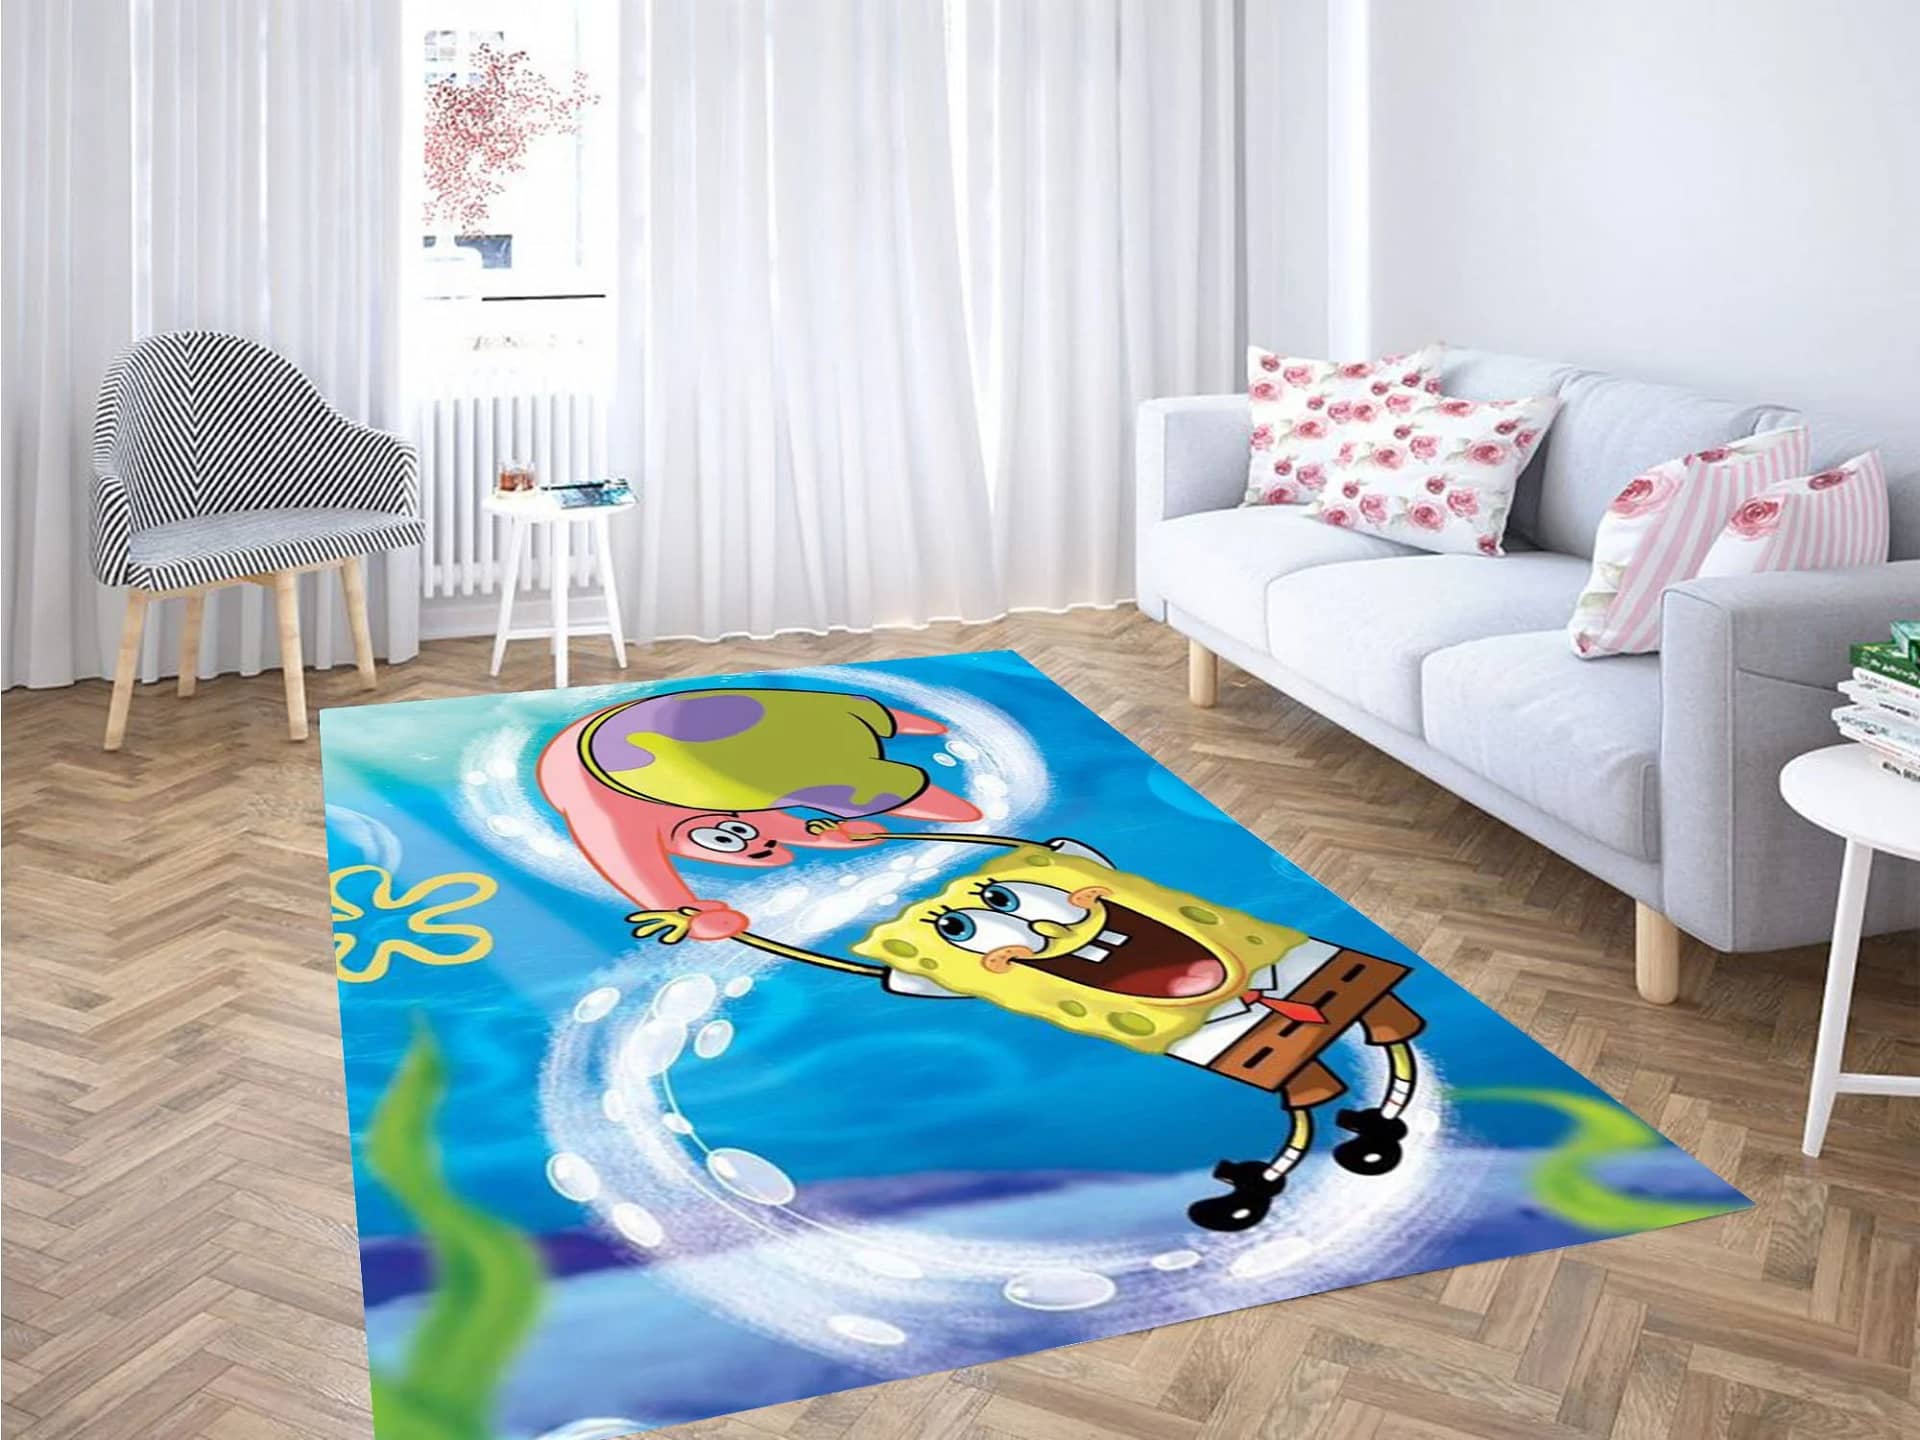 Spongebob Squarepants Wallpaper Carpet Rug